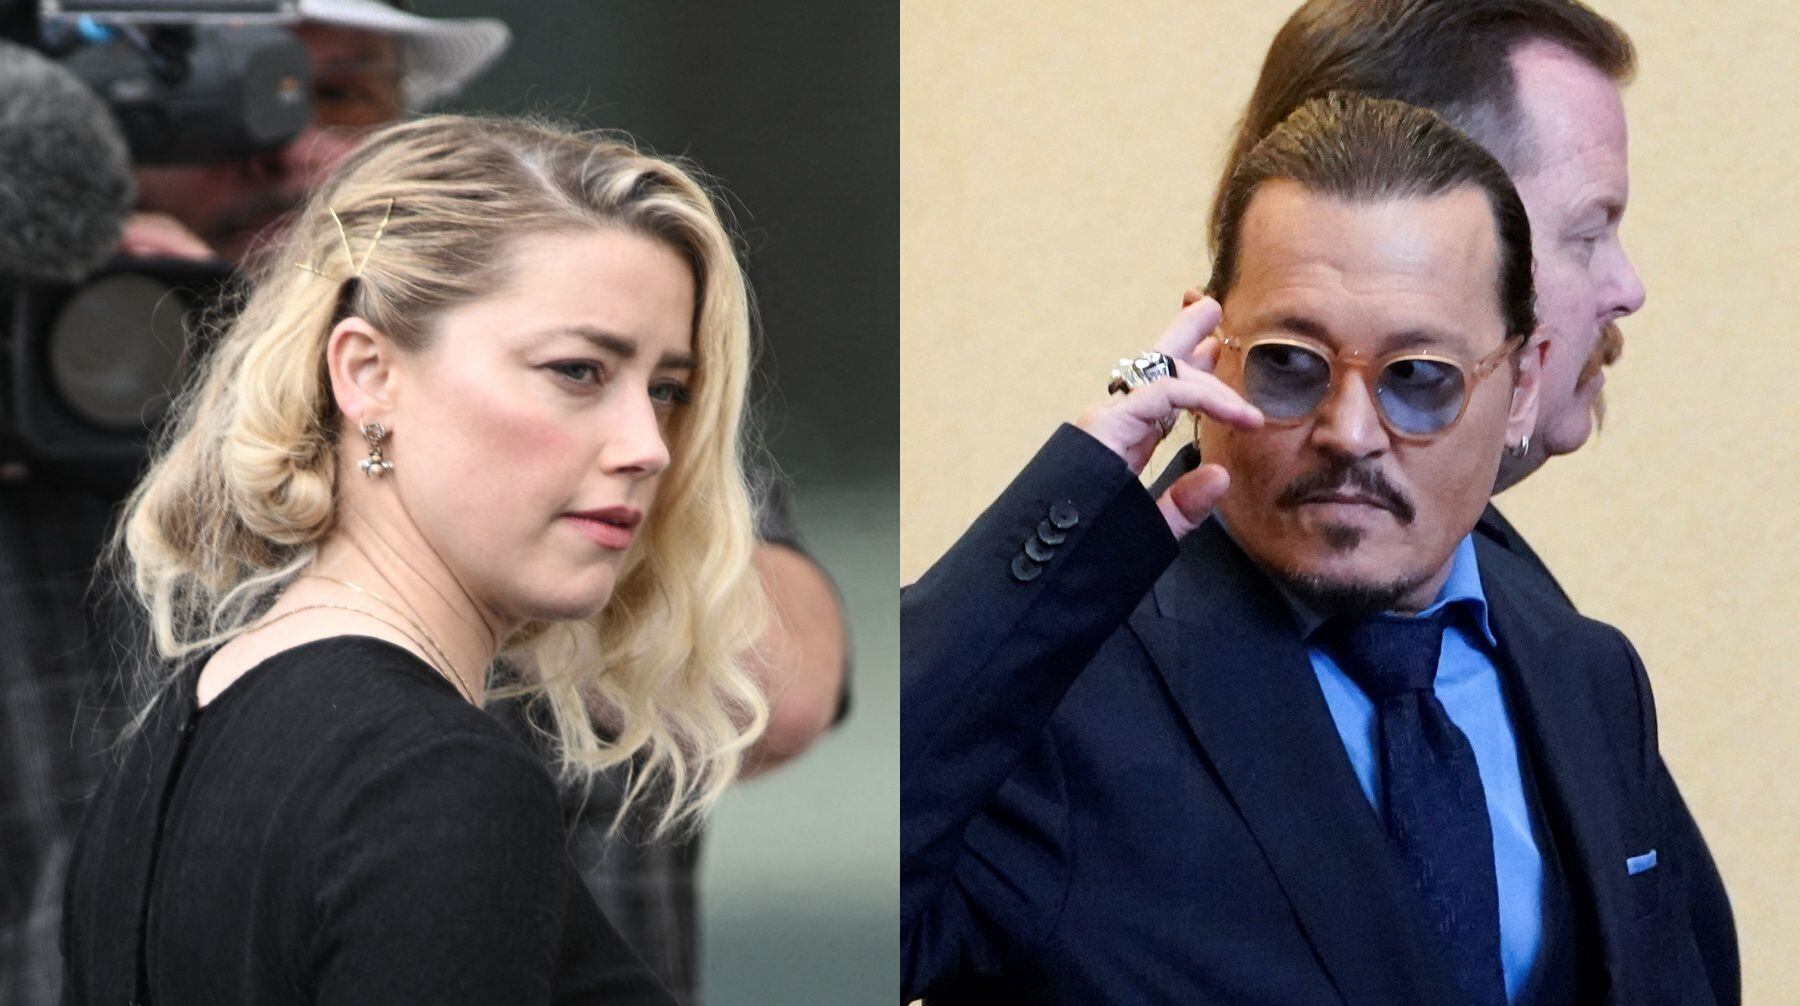 A la izquierda, Amber Heard en su llegada al juzgado este miércoles 1 de junio; para la lectura del veredicto del jurado. A la derecha, Johnny Depp en una de las audiencias previas. Él no estará presente en este día fundamental para su caso.